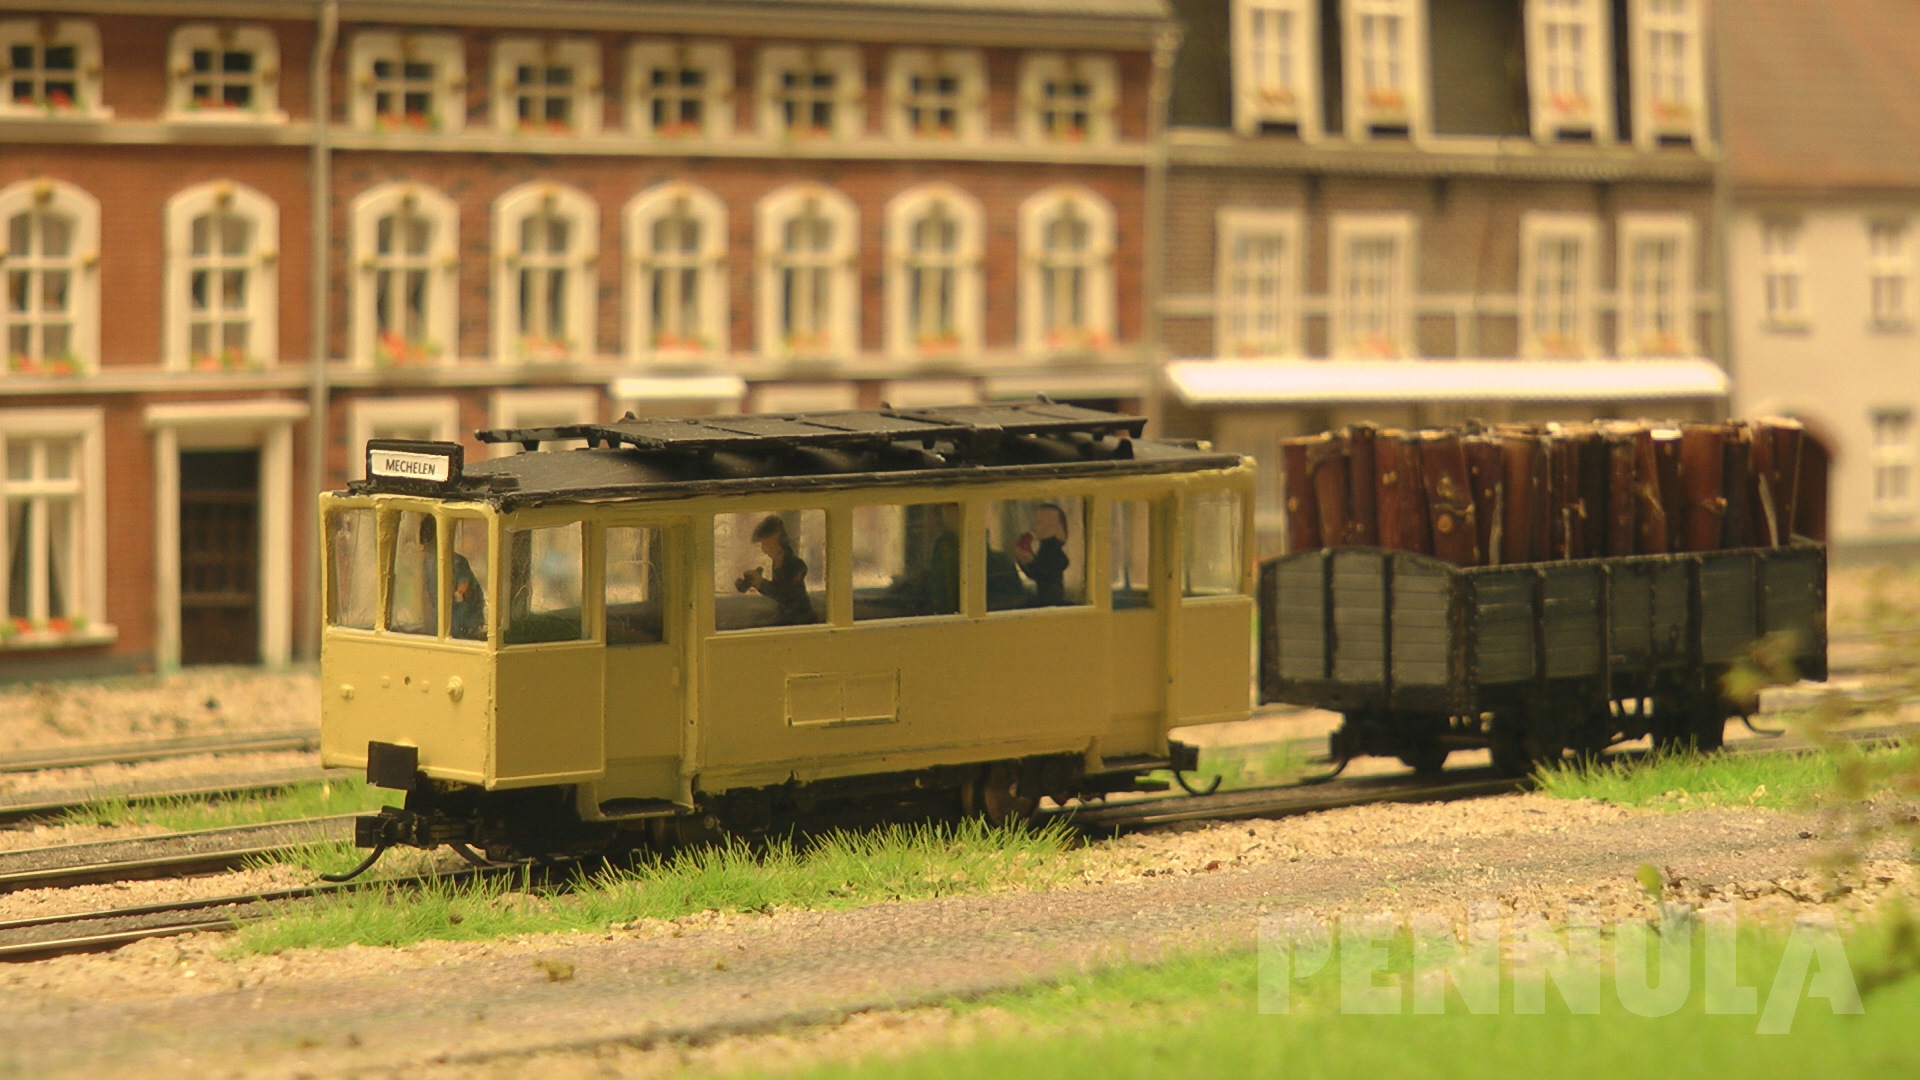 Dampf-Modell-Straßenbahn von Westerlo: Ein Modelleisenbahn-Diorama vom MSC de Kempen